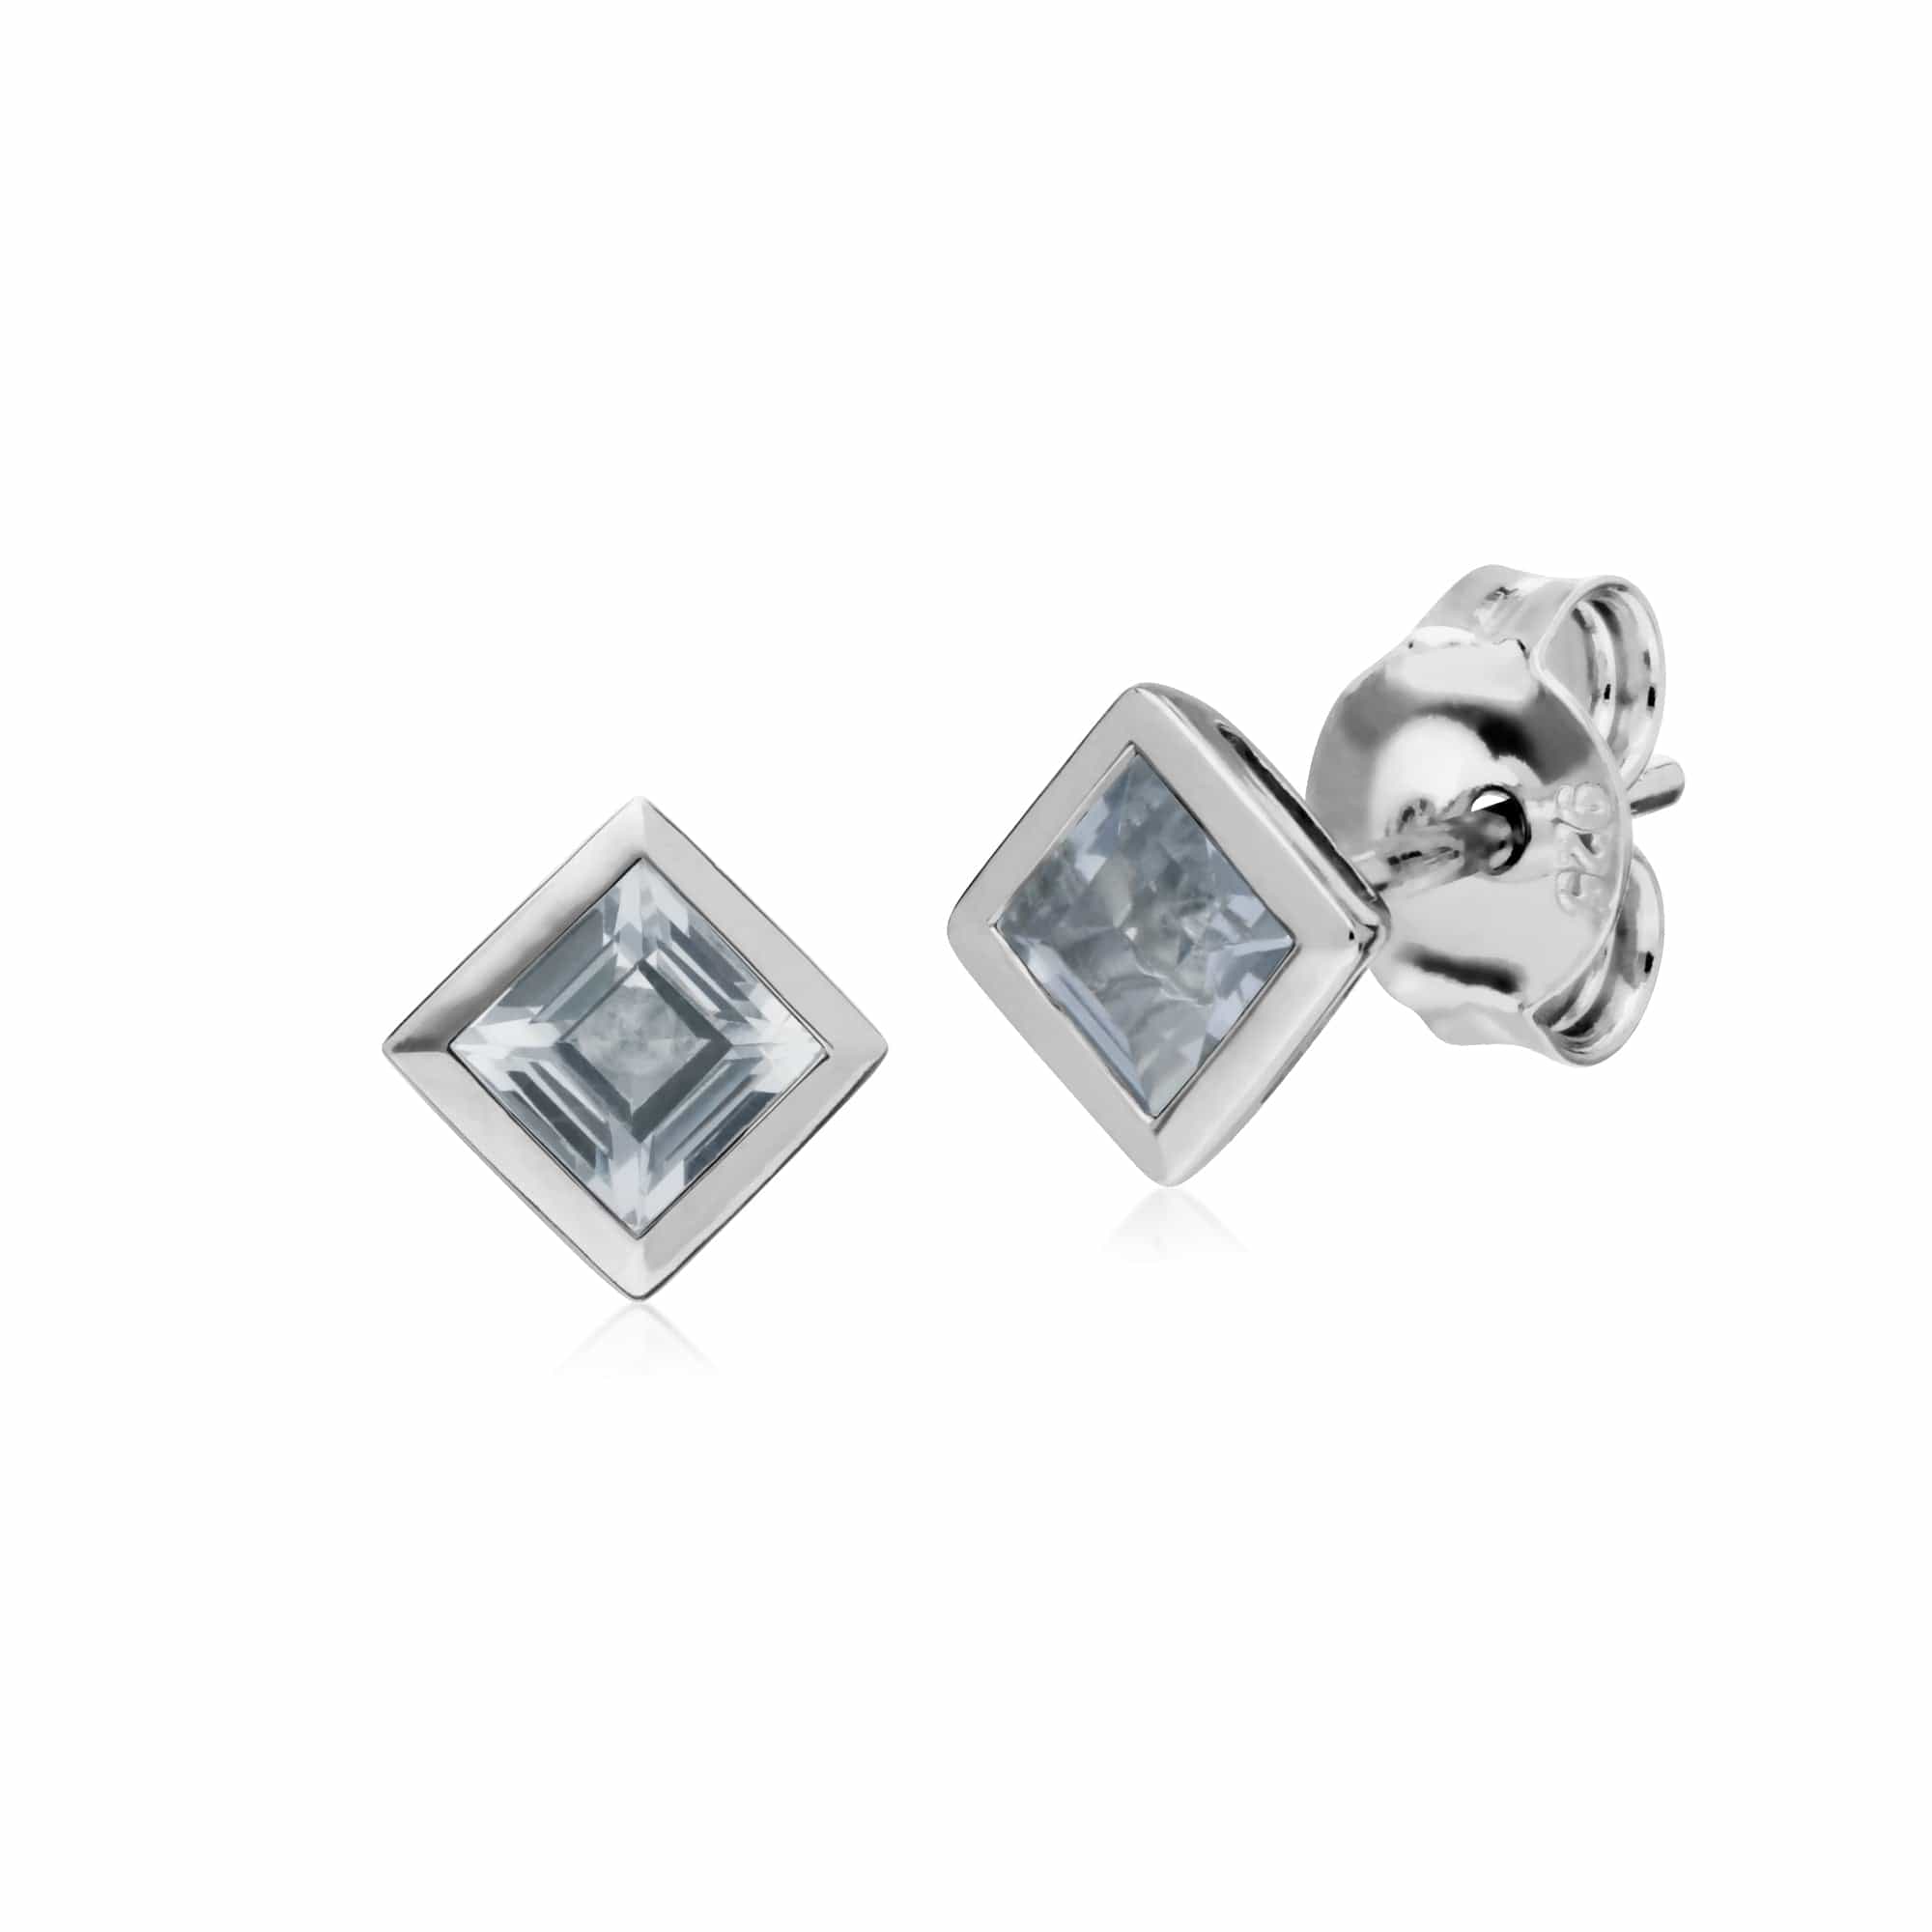 Gemondo Sterling Silver Simple Clear Topaz Bezel Square Stud Earrings - Gemondo